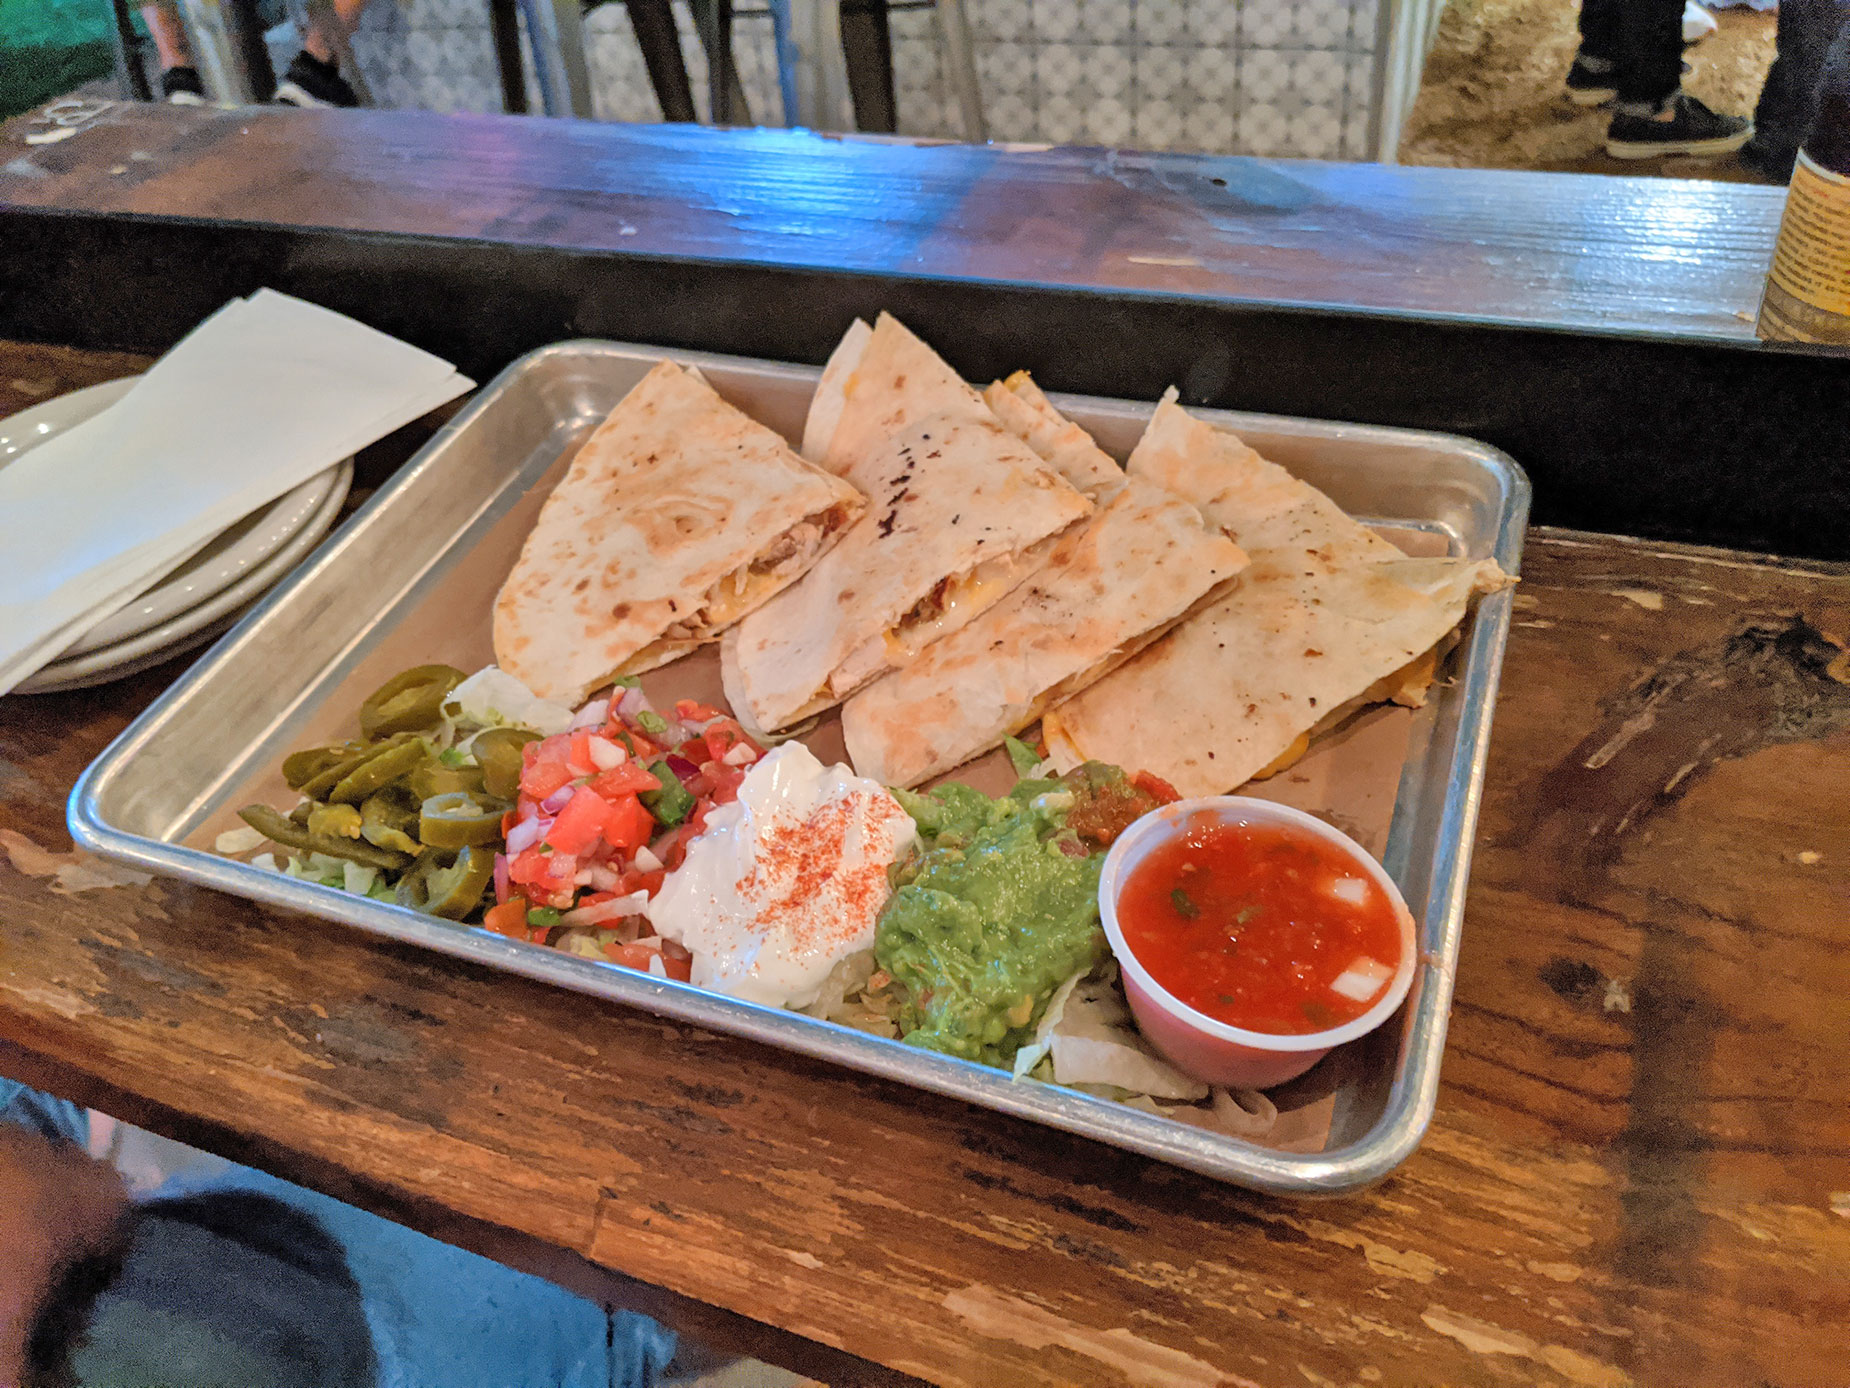 The quesadilla at Redfield's Tavern in Dallas.